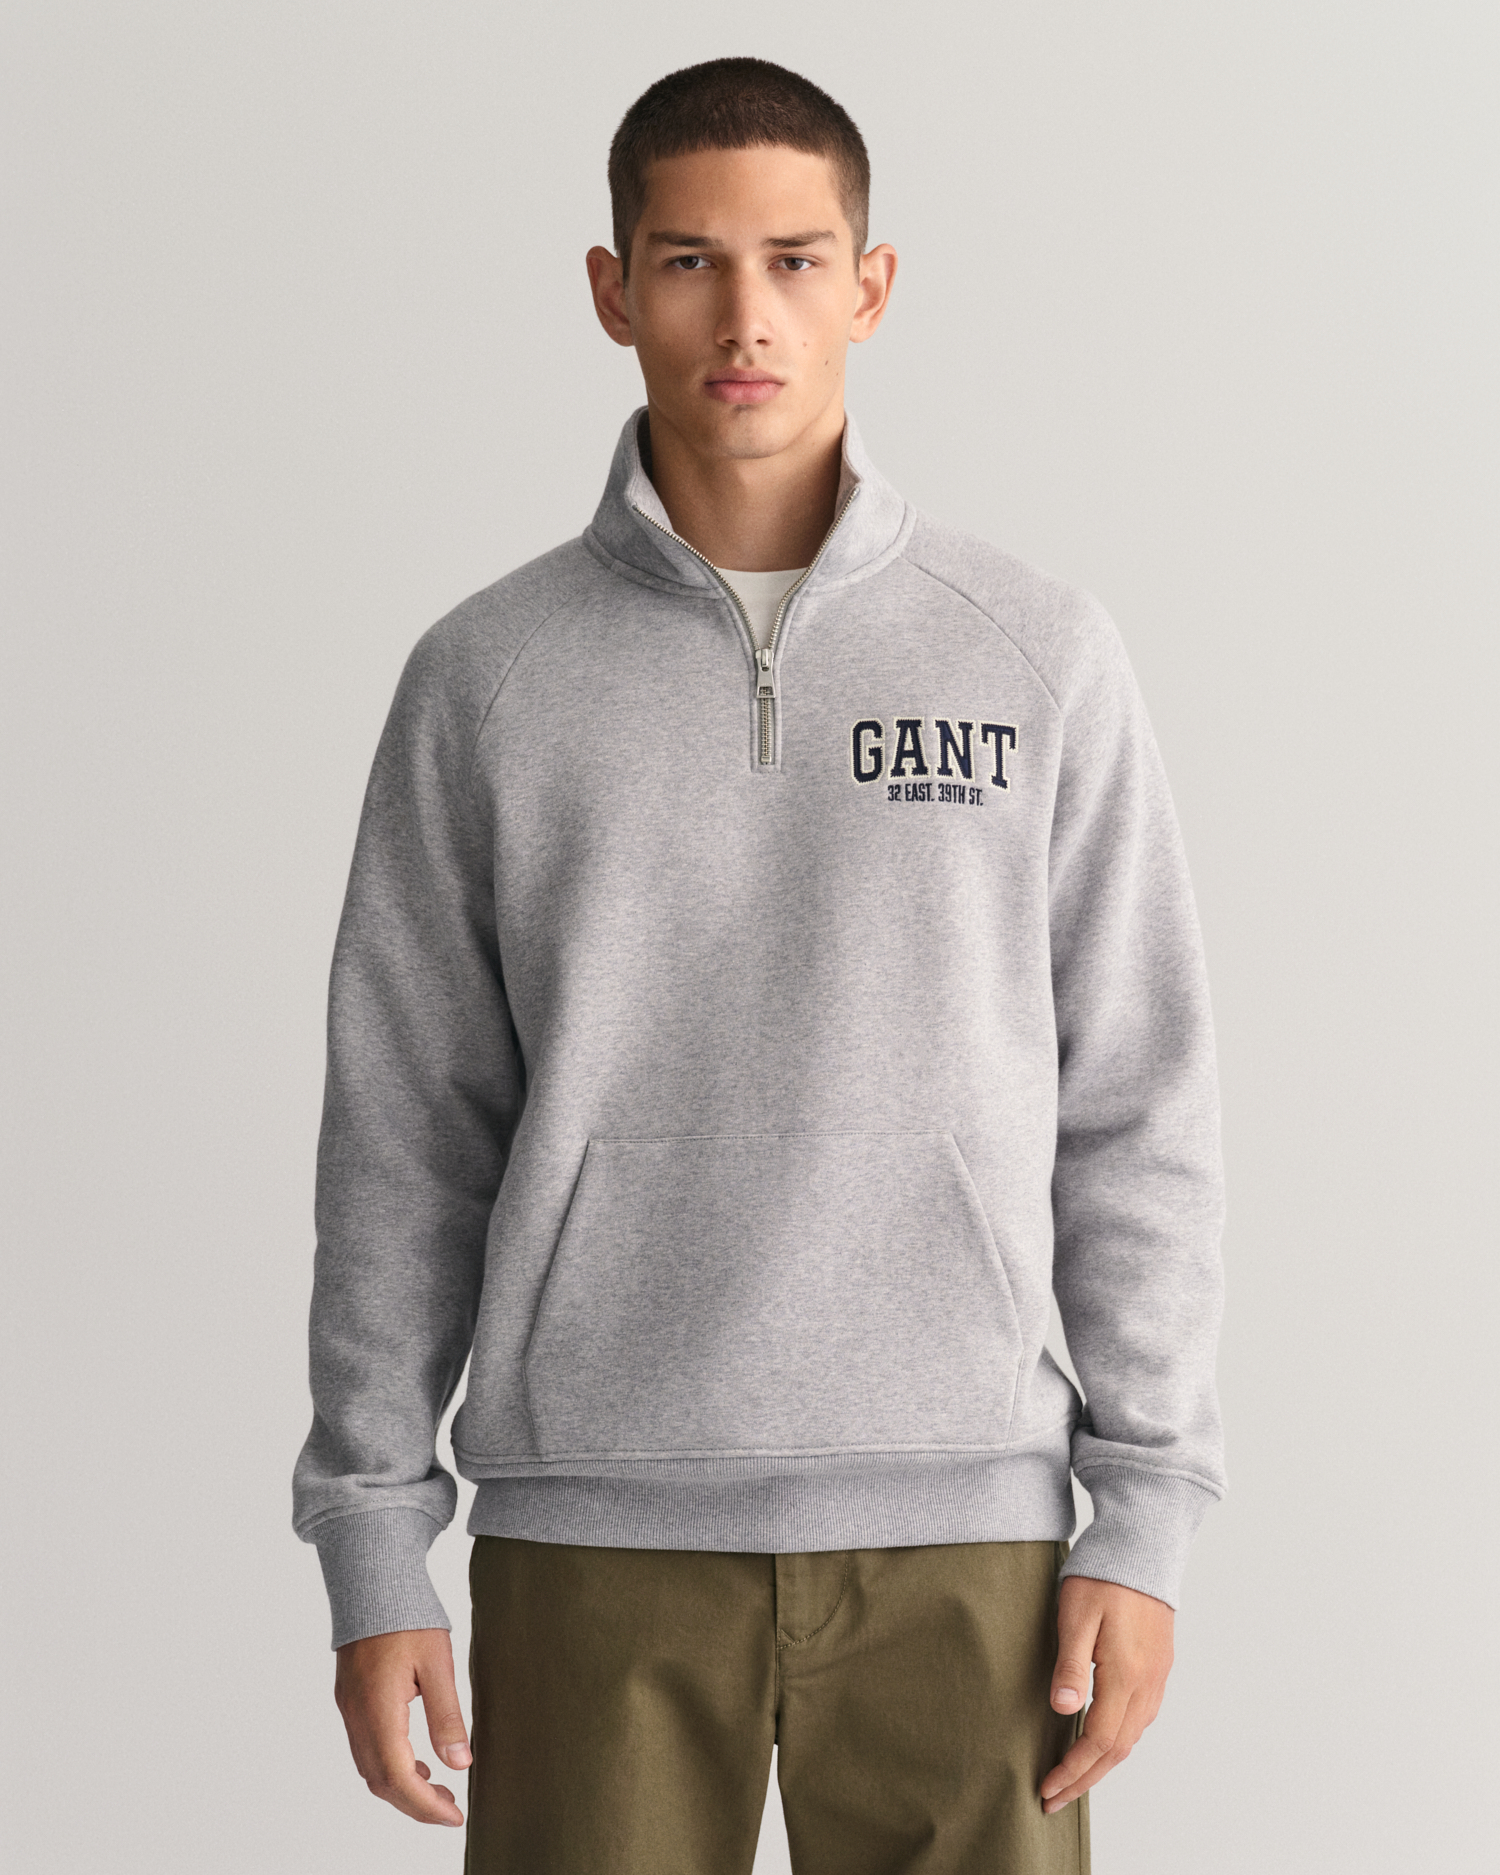 GANT Arch Graphic half-zip sweatshirt